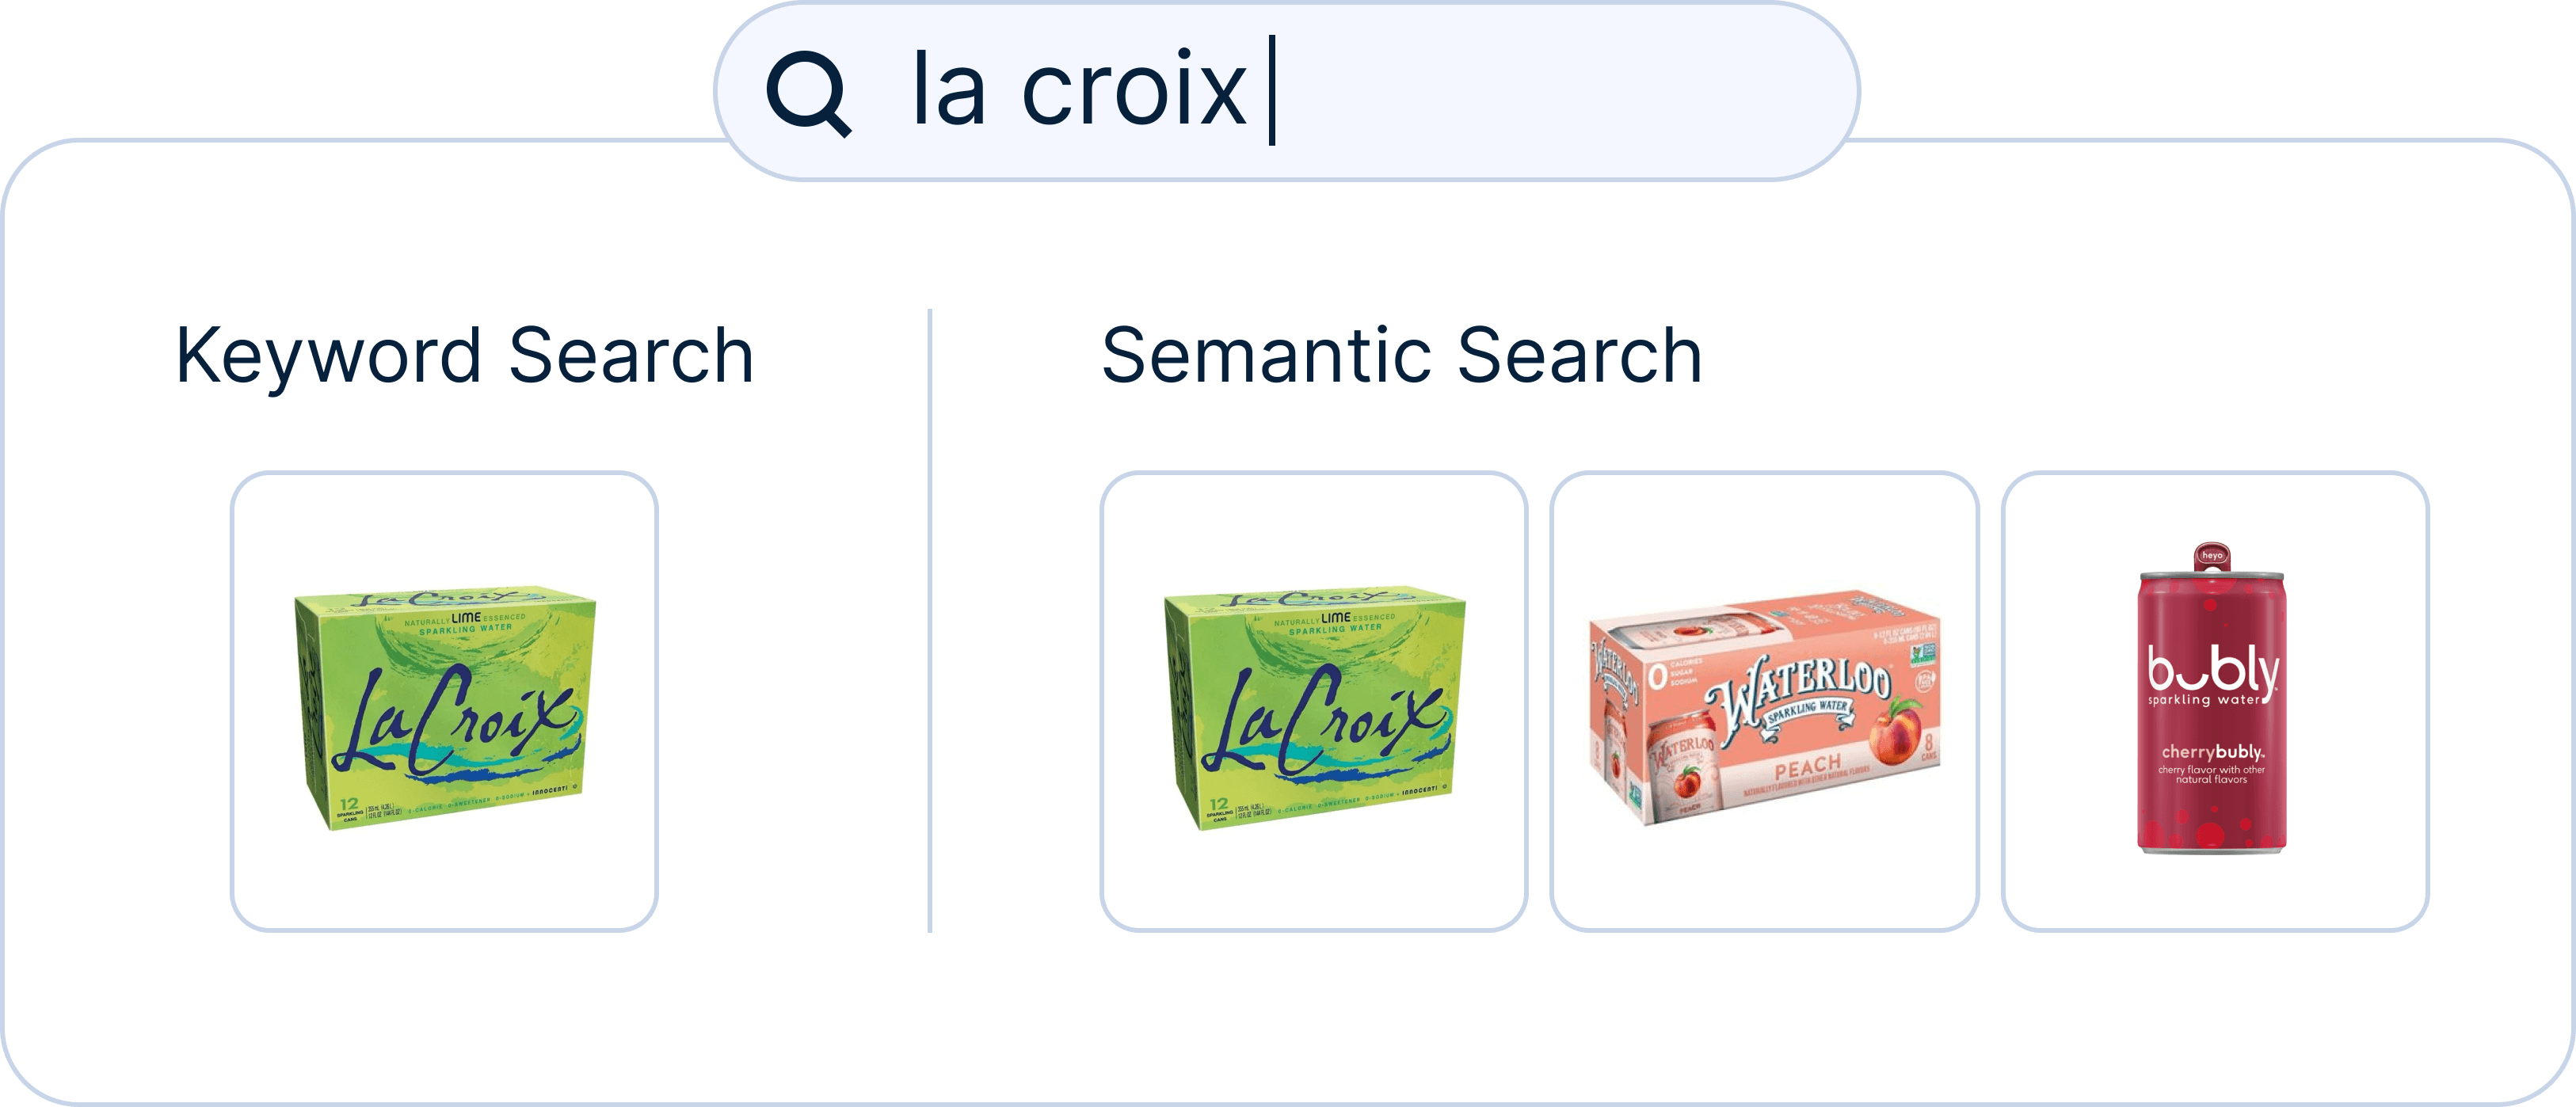 semantic_search_lacroix.png